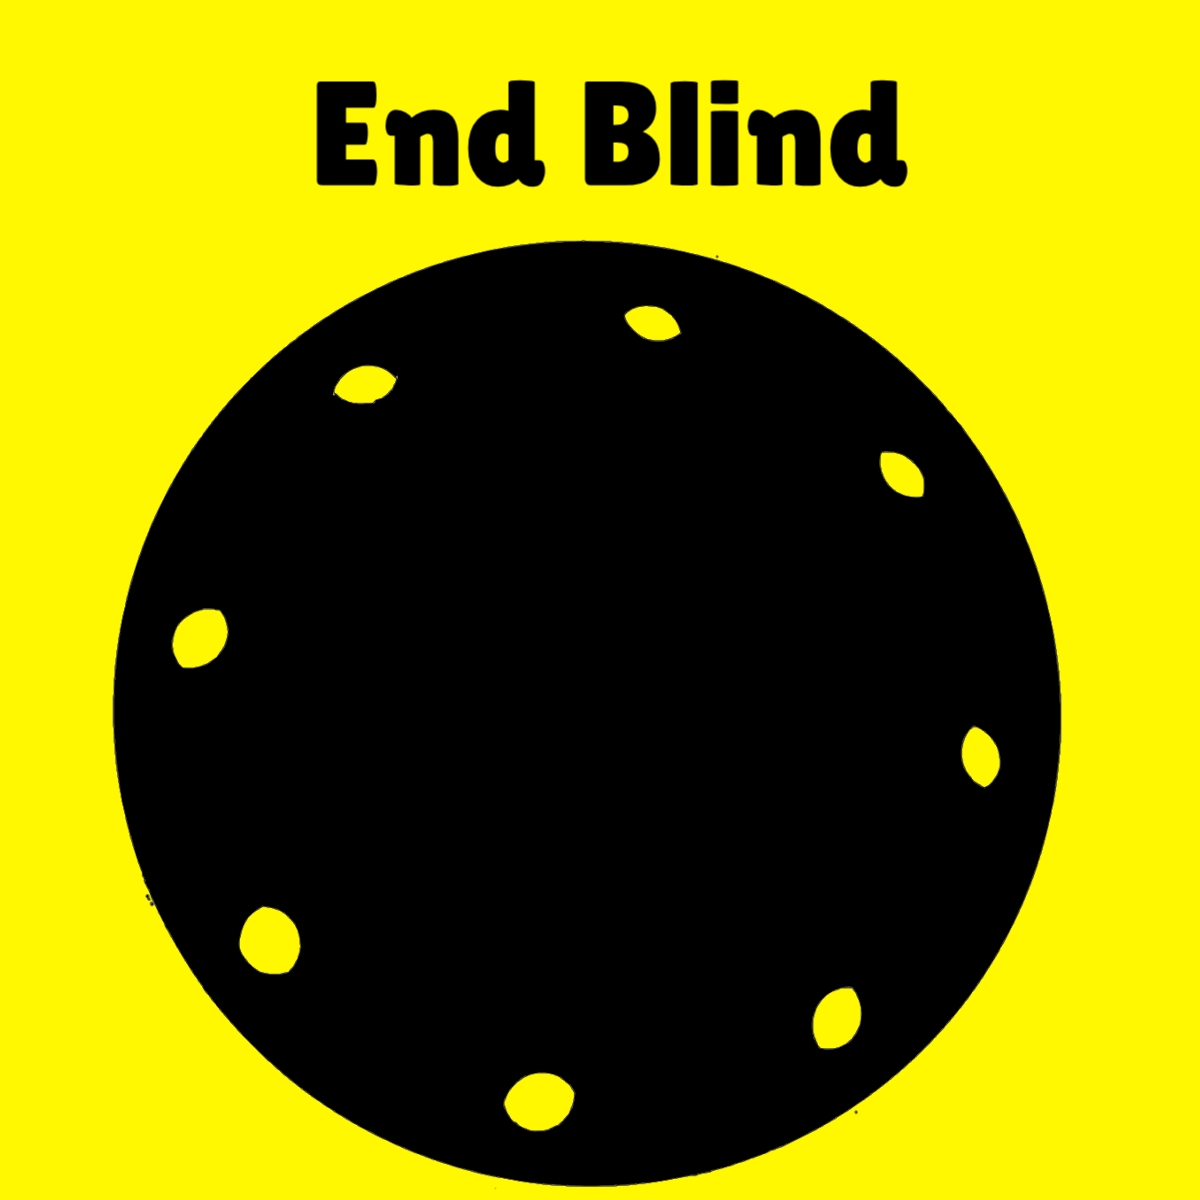 End-blind